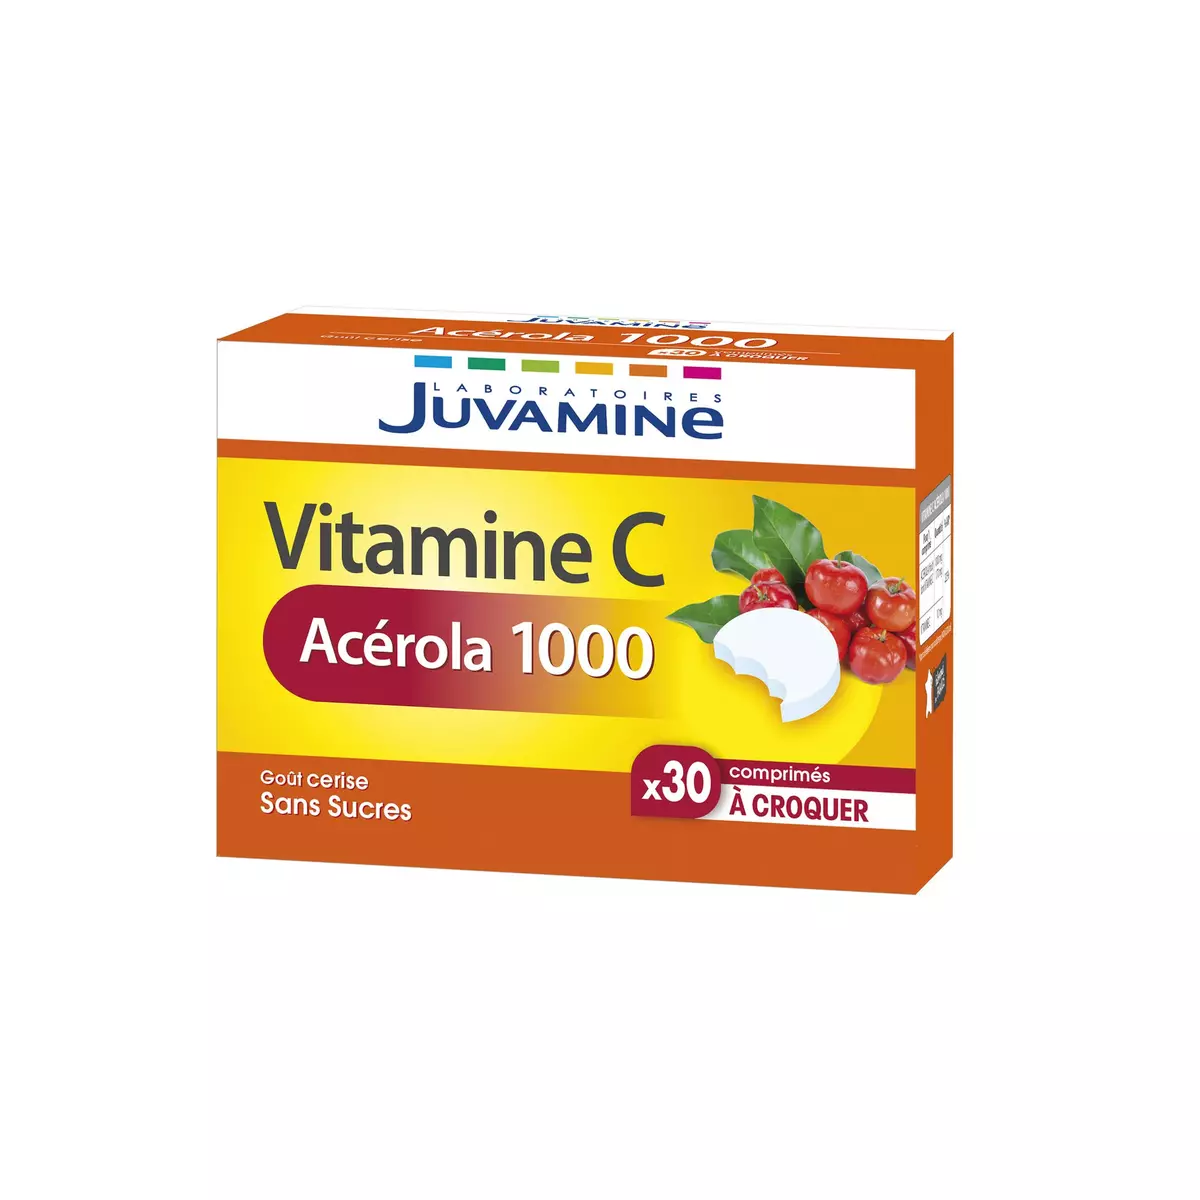 JUVAMINE Complément vitamine C acérola 1000 sans sucre goût cerise en comprimés 30 comprimés 68g